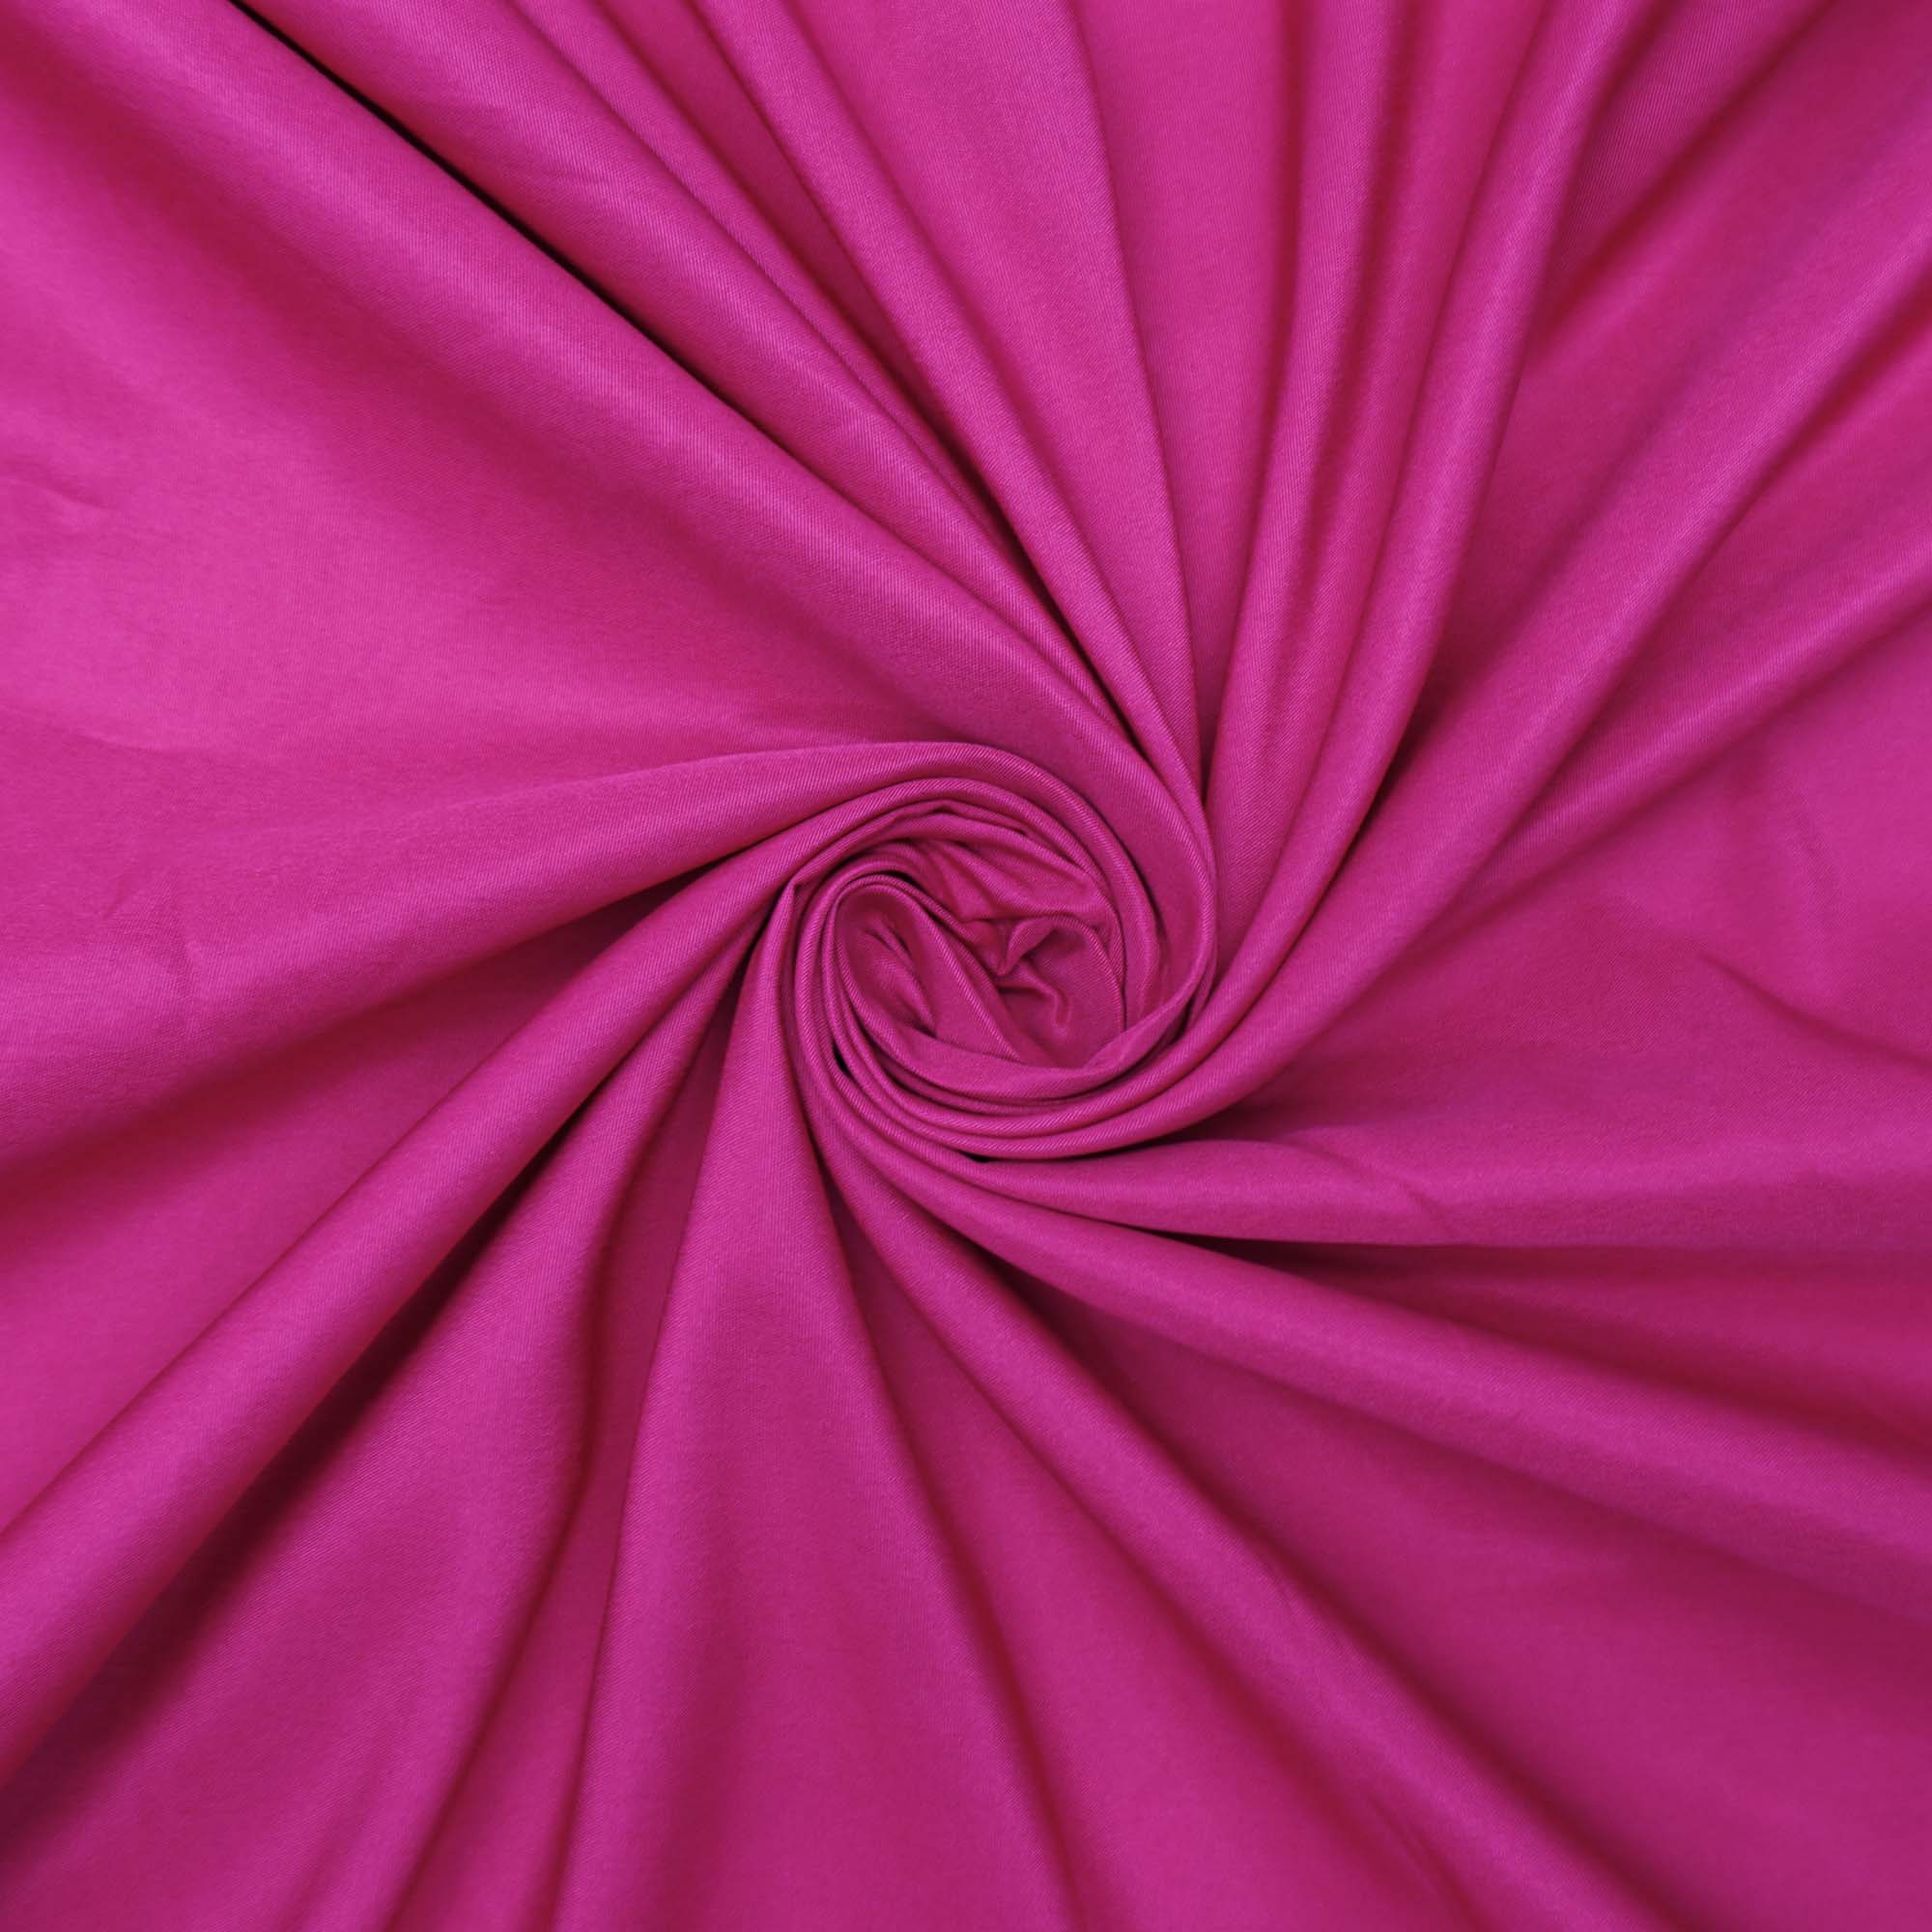 Tecido de forro pink